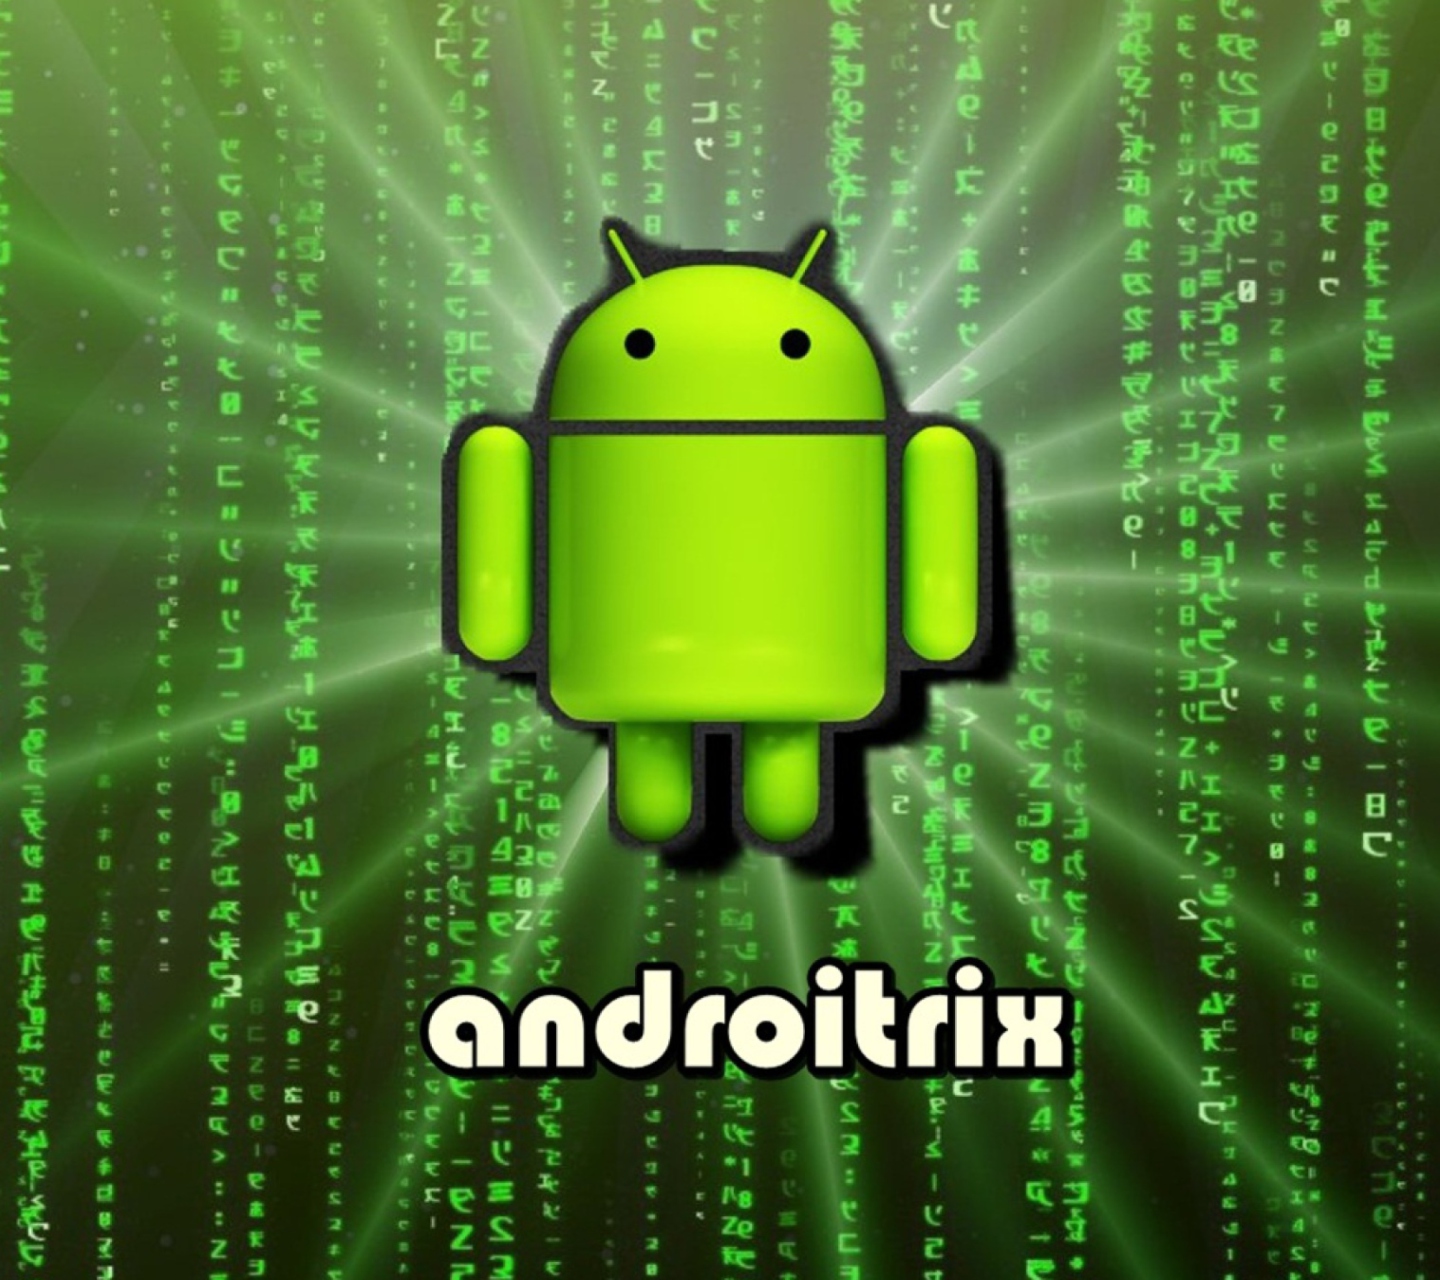 Android Matrix wallpaper 1440x1280